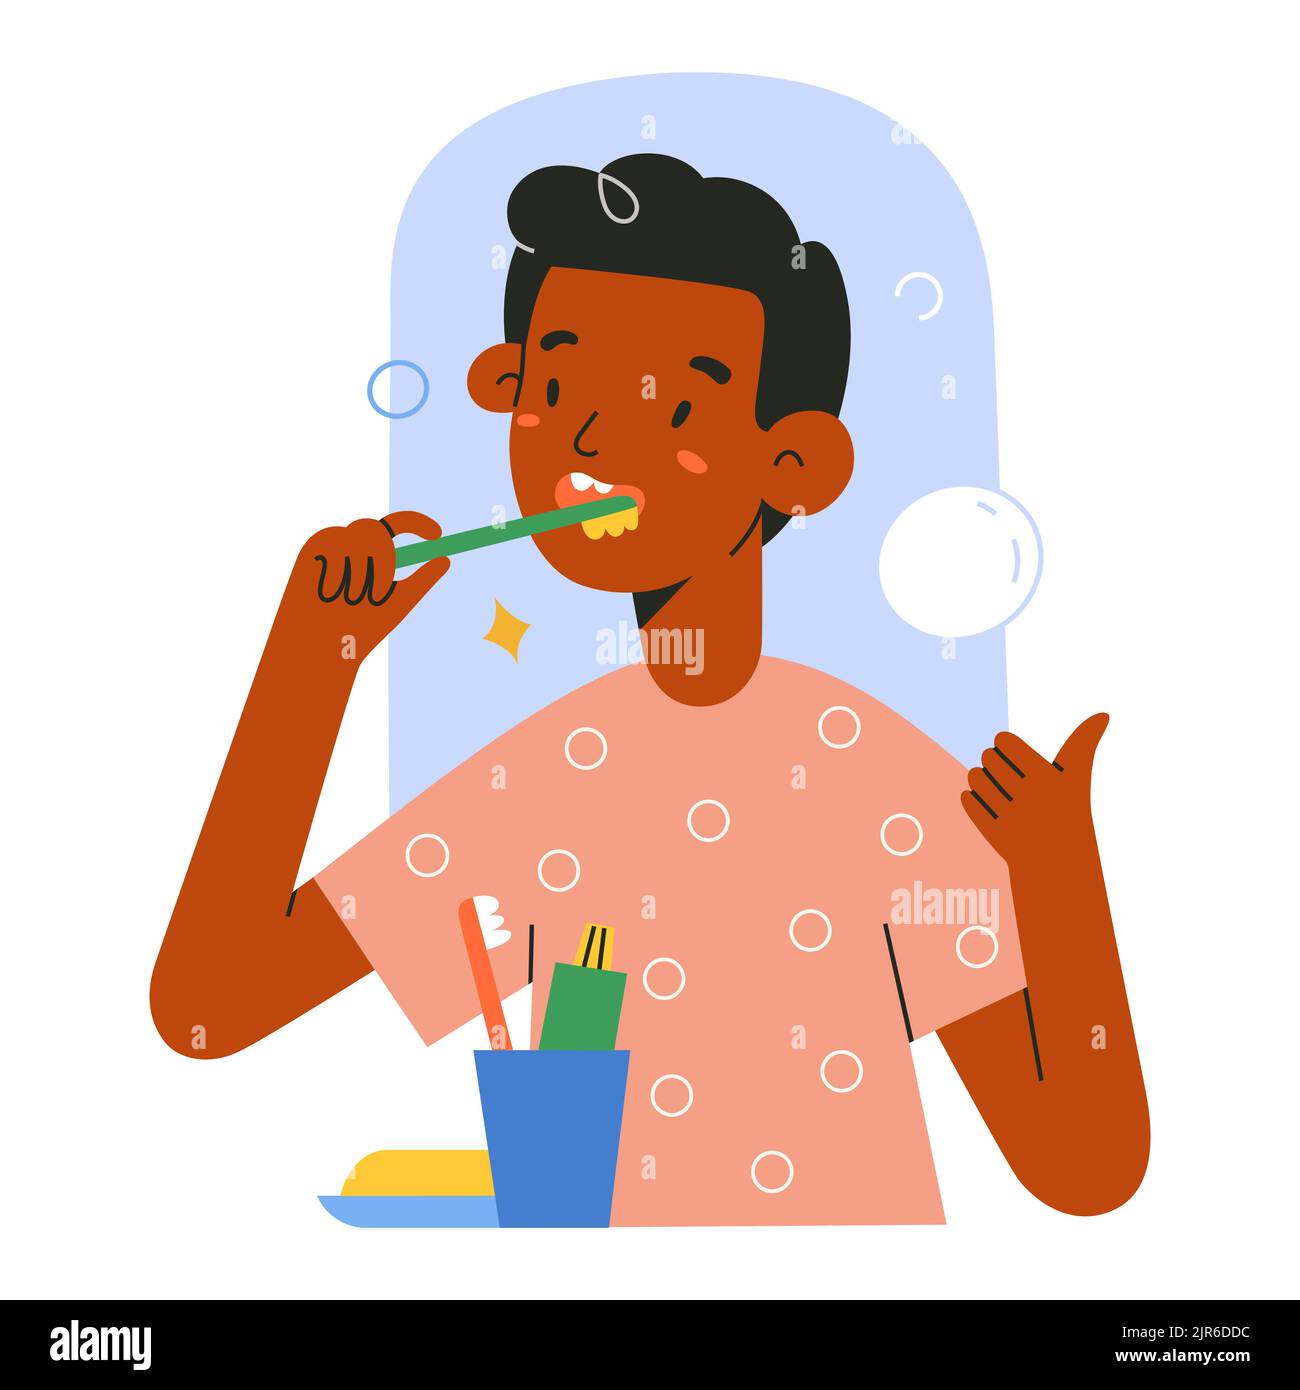 Süßes afroamerikanisches Kind putzt seine Zähne, steht im Badezimmer vor dem Spiegel, putzt Zähne mit Zahnbürste, zeigt Daumen nach oben Geste Stock Vektor